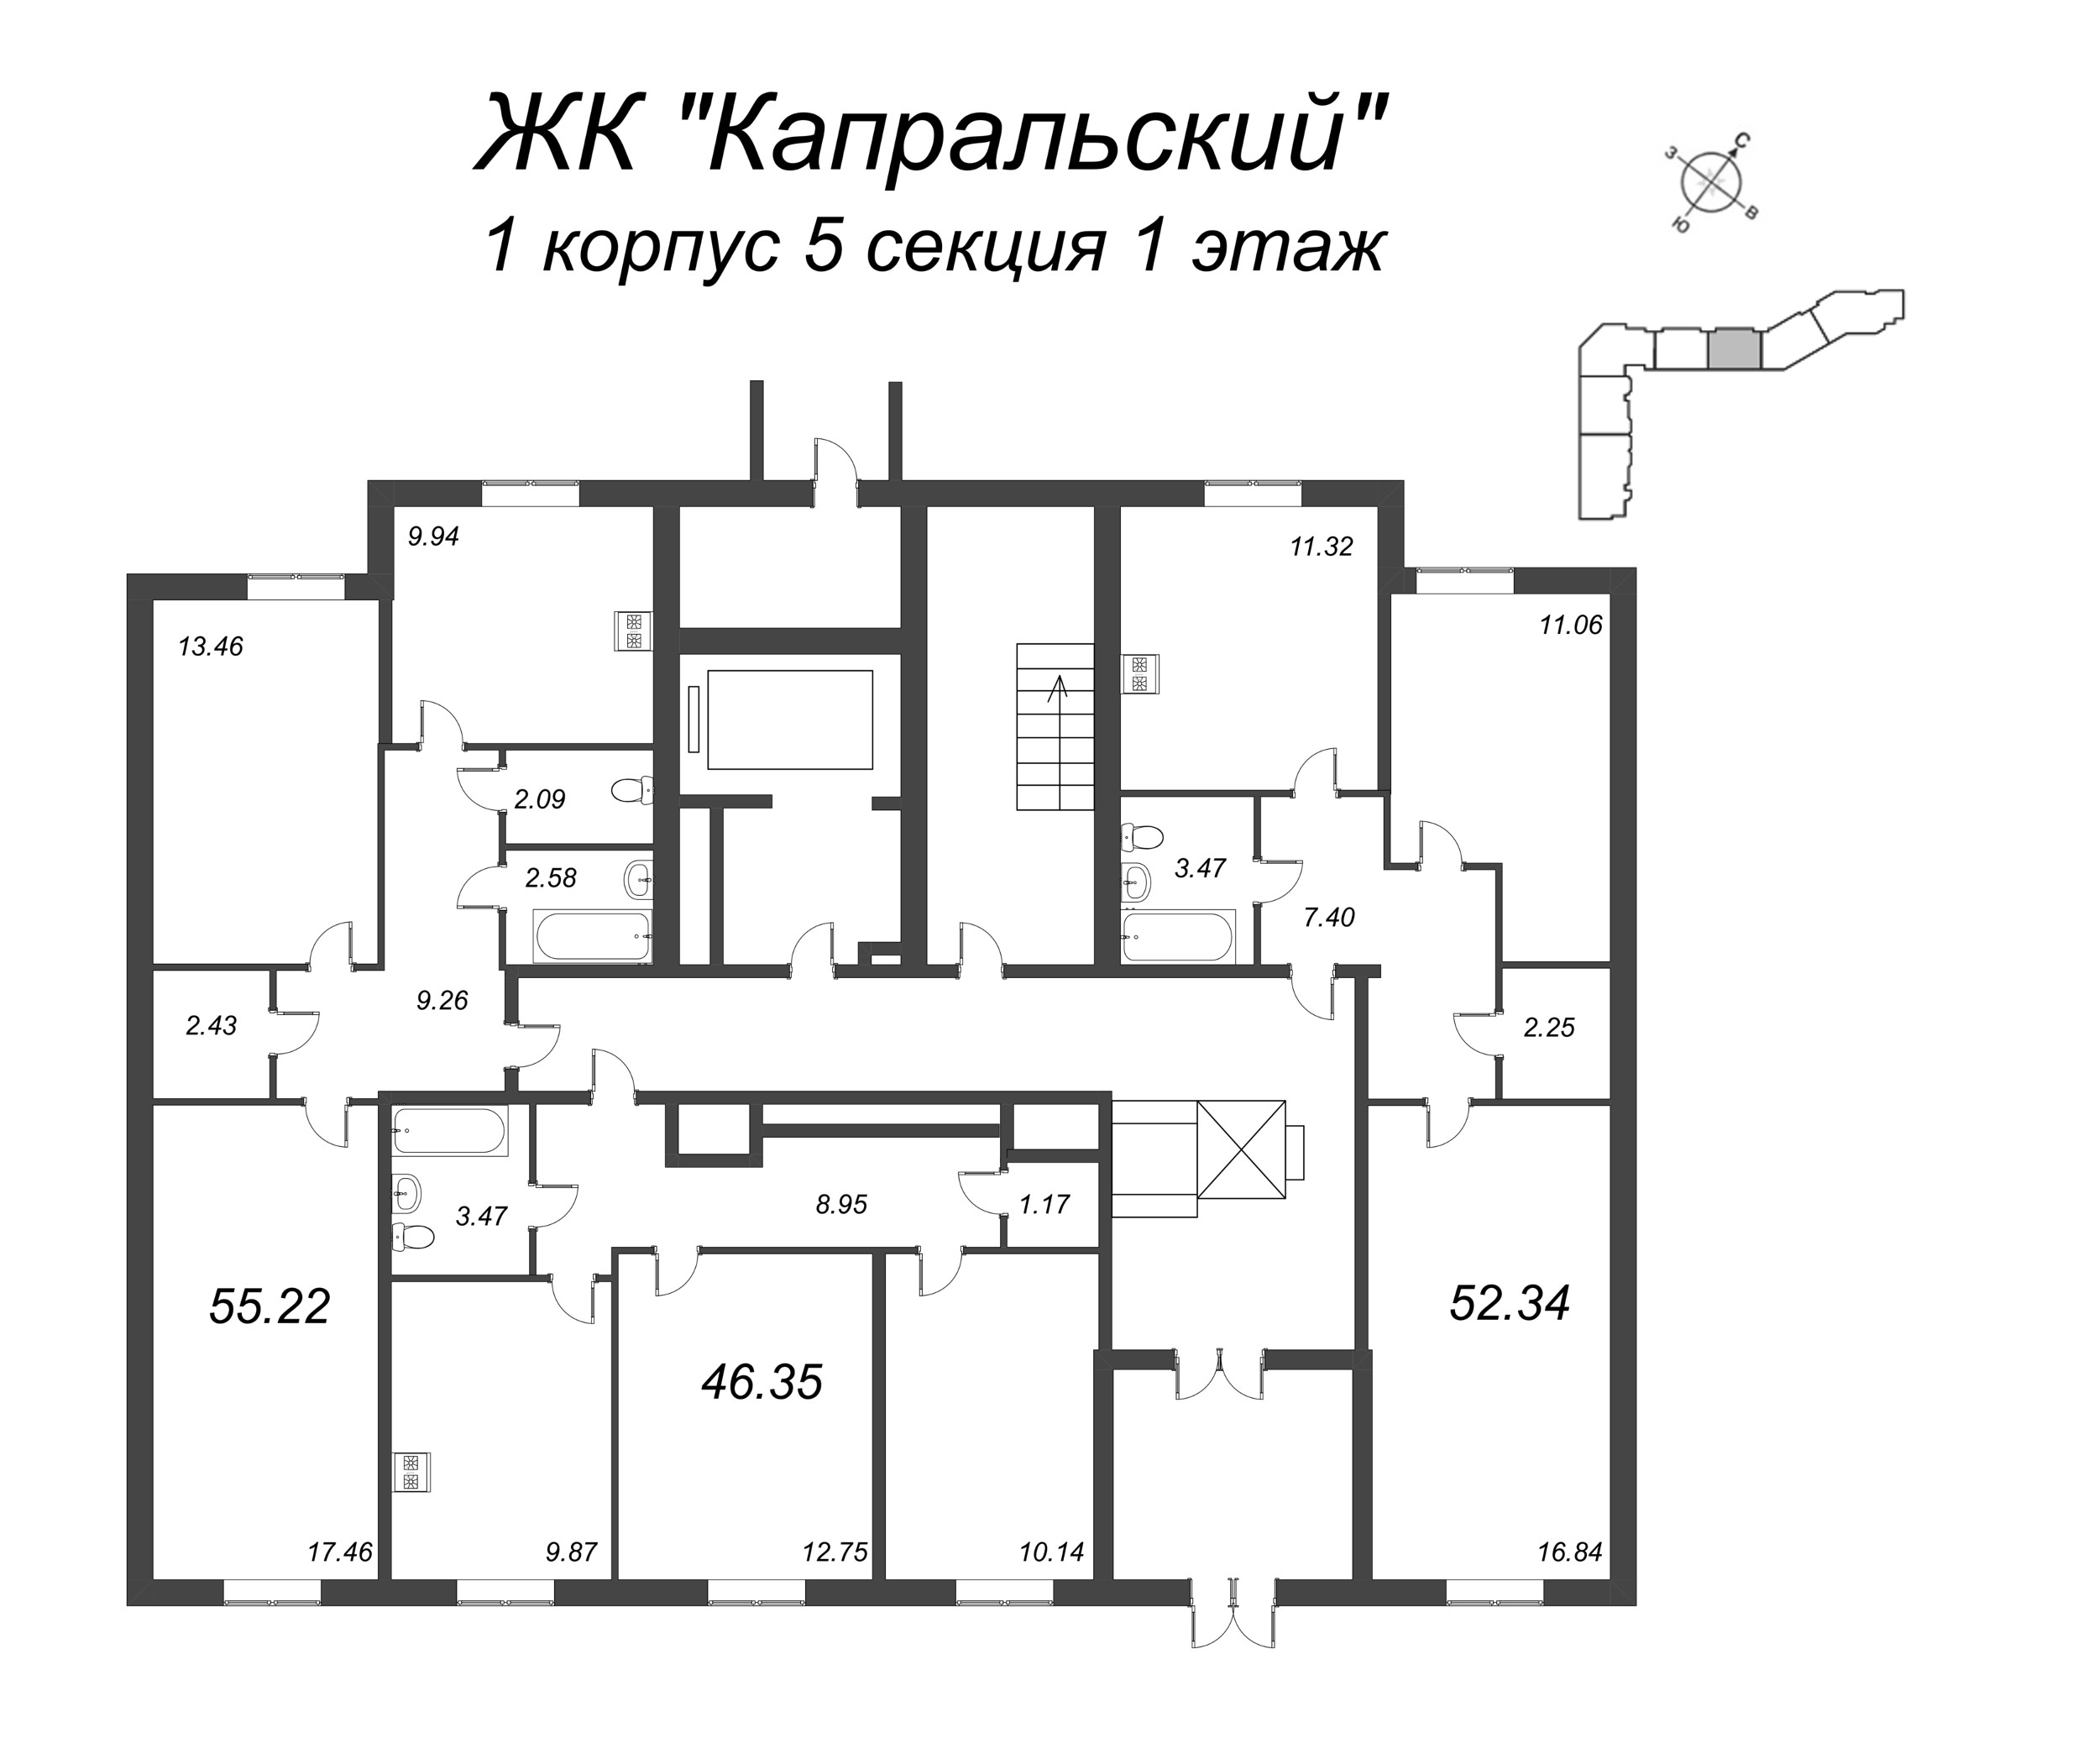 2-комнатная квартира, 46.35 м² в ЖК "Капральский" - планировка этажа